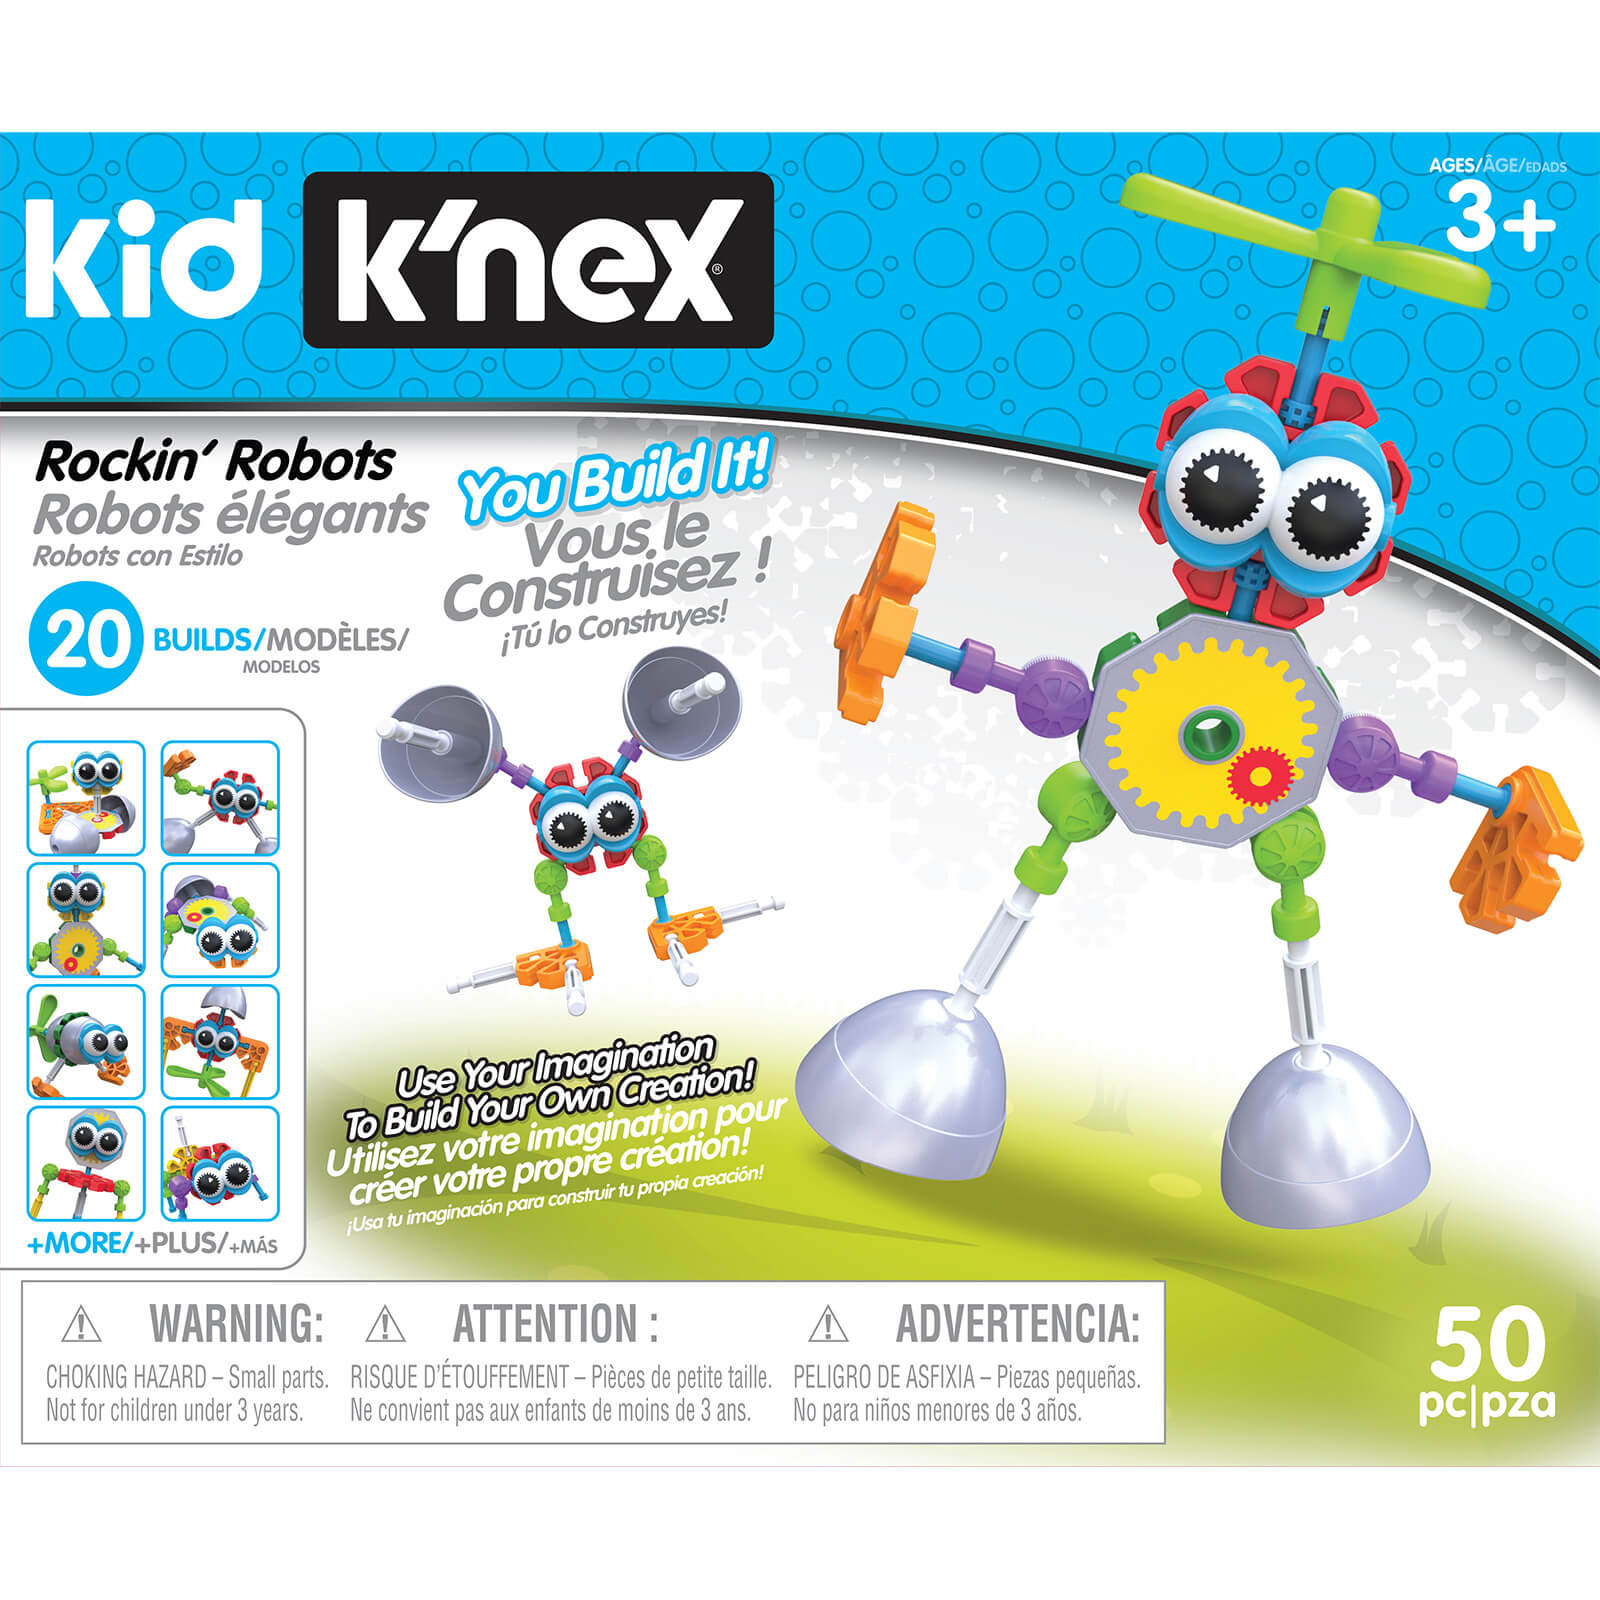 Kid K'nex - Rockin' Robots Building Set